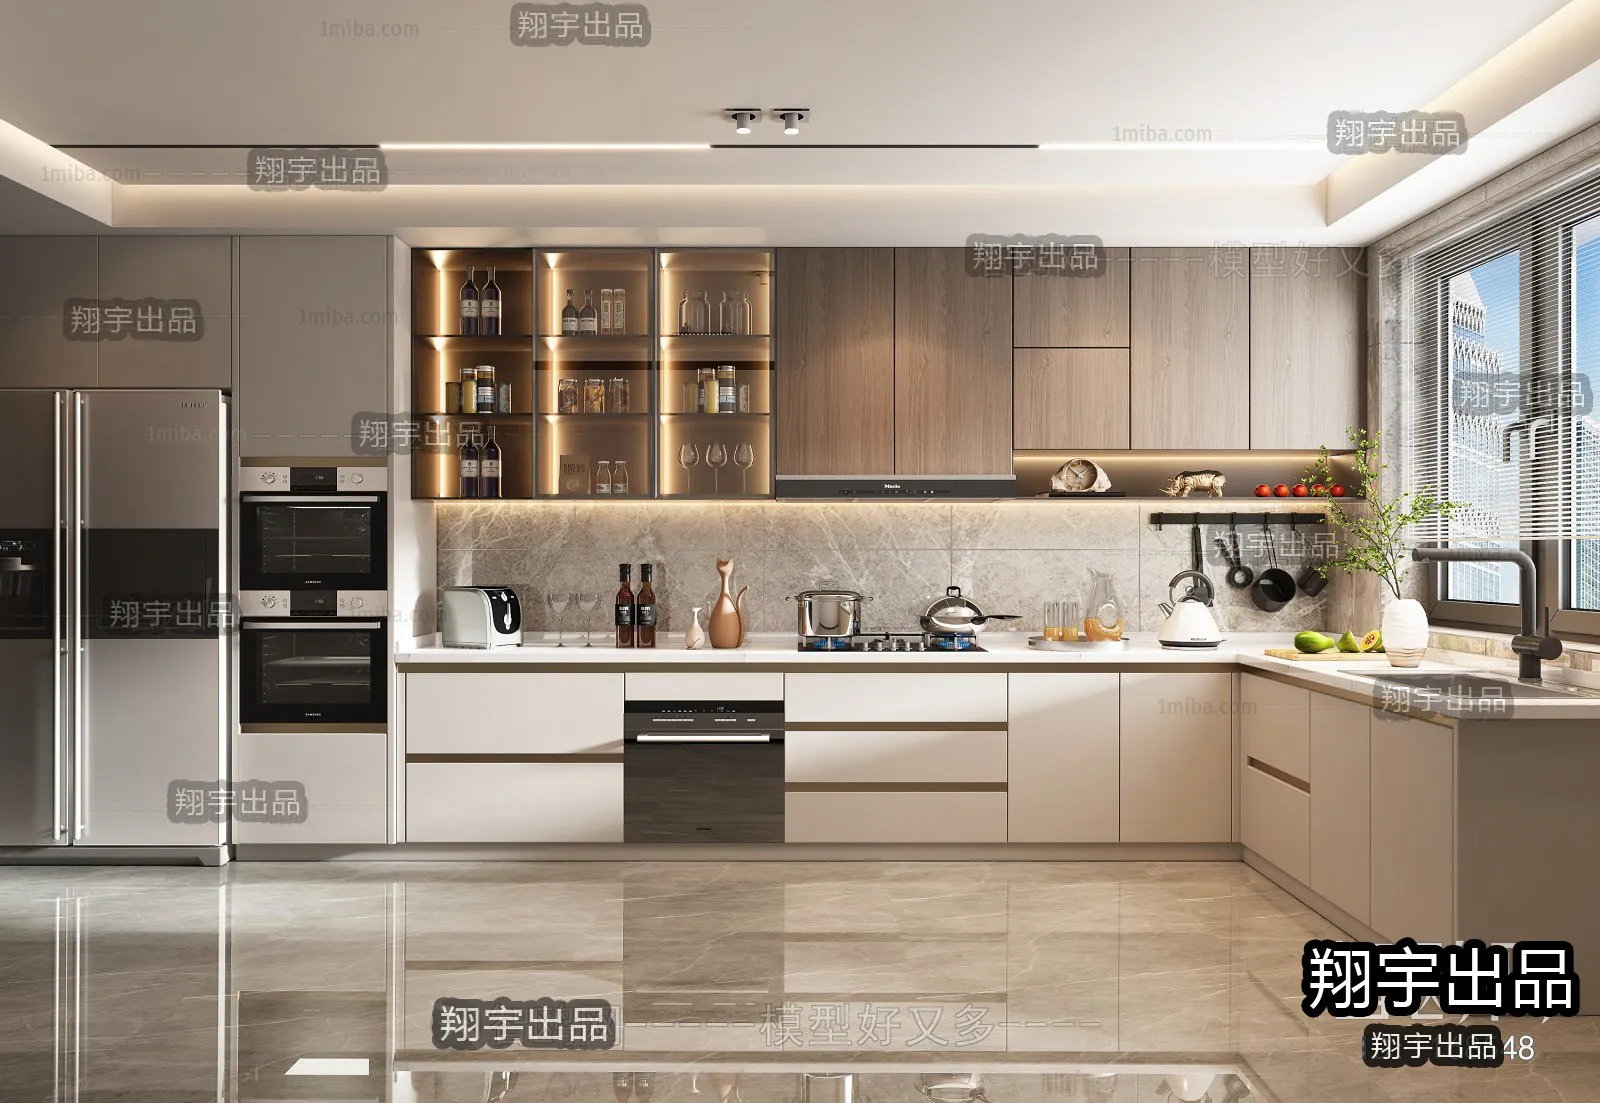 Kitchen – Modern Interior Design – 3D Models – 005